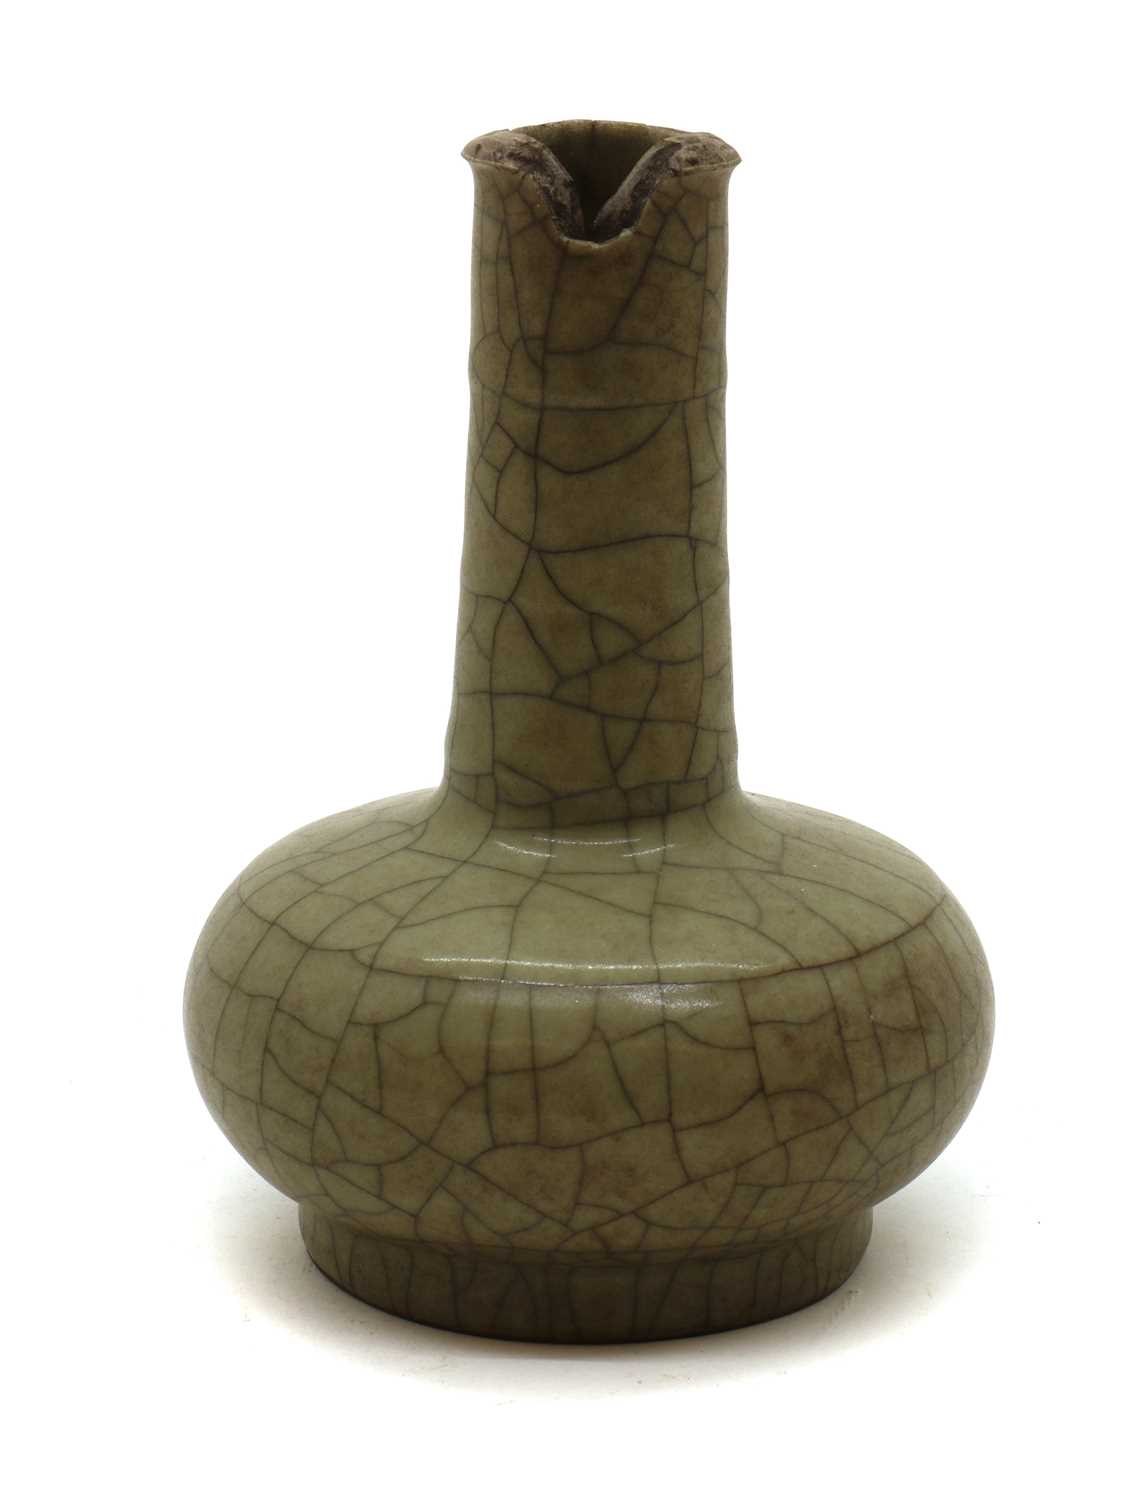 A Chinese celadon glazed bottle vase, - Image 2 of 17